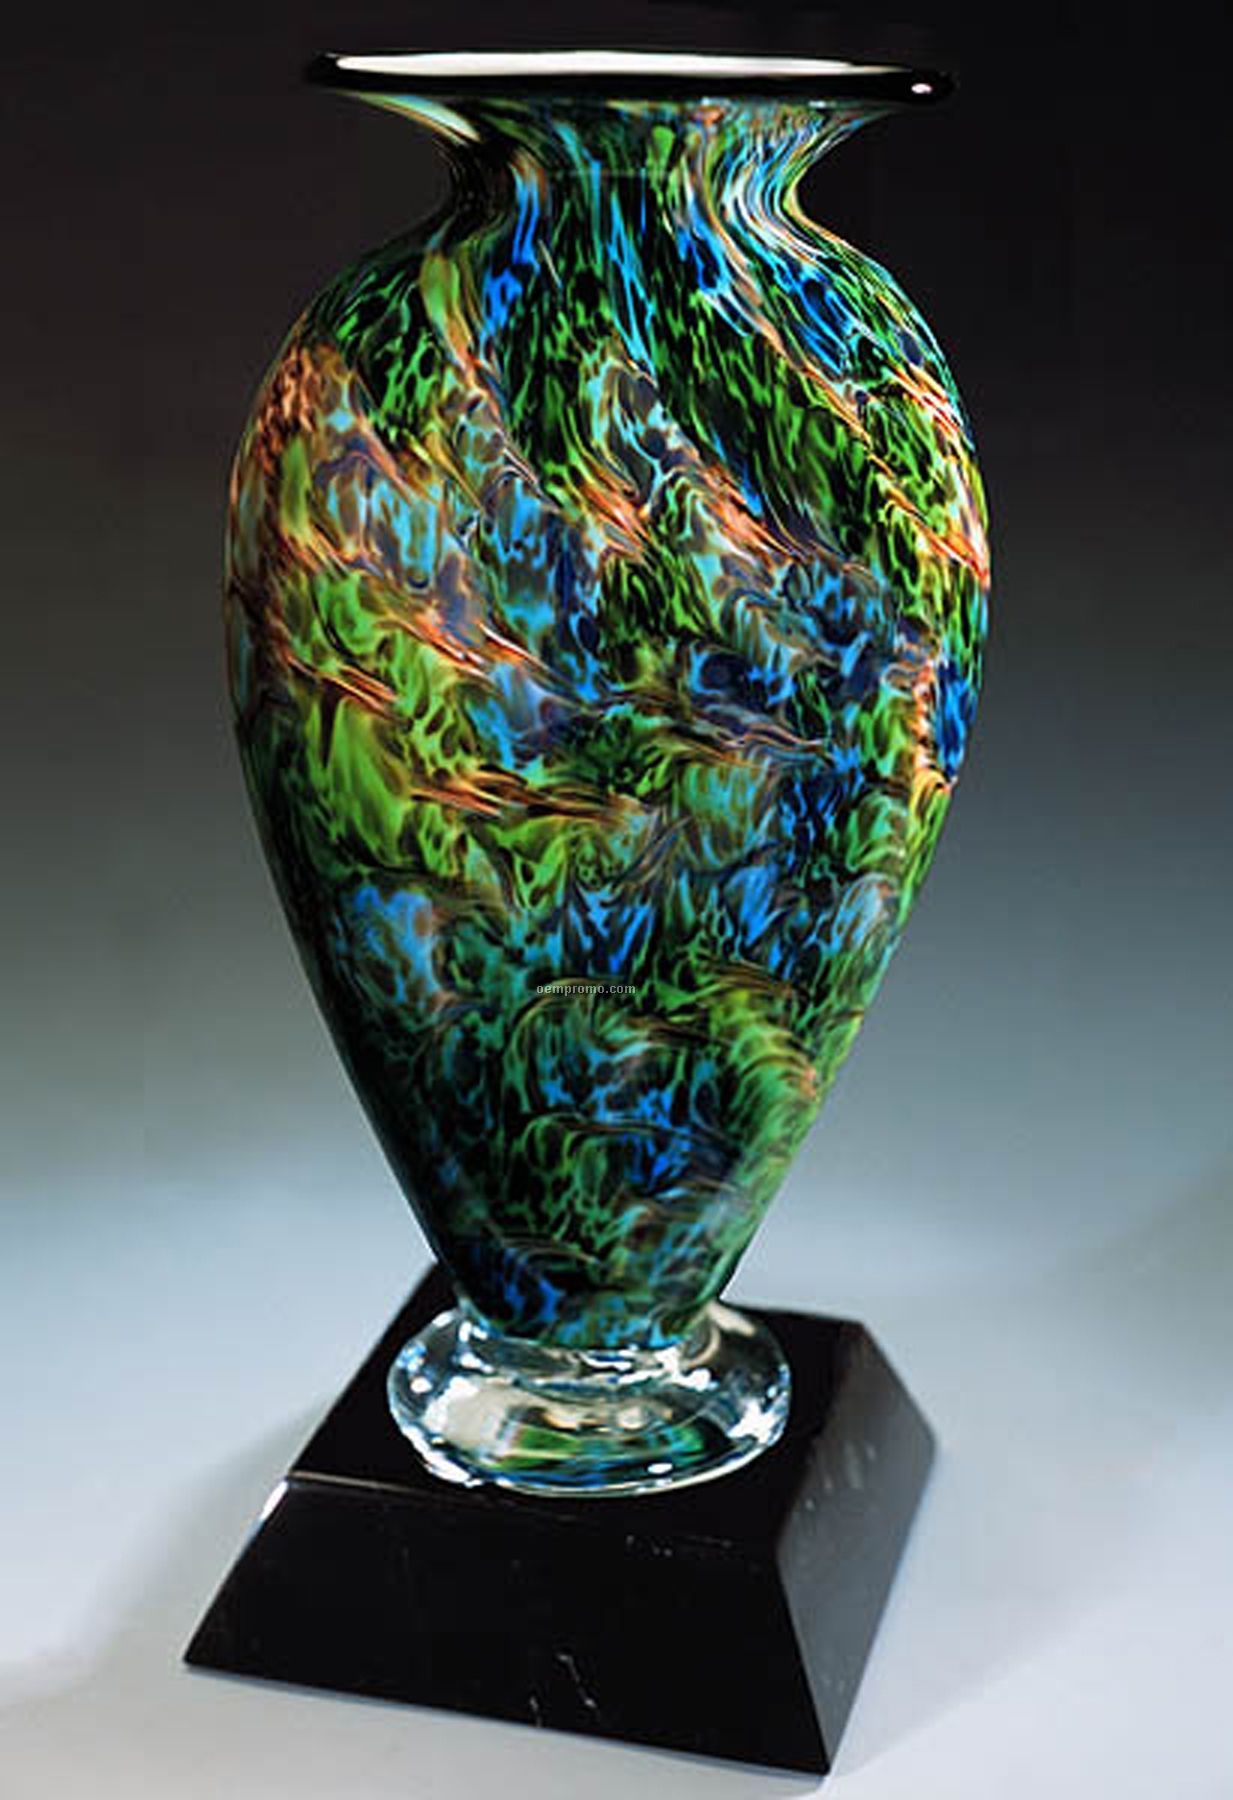 Jade Glen Mercury Sculpture Award W/ Marble Base (3.75"X7")